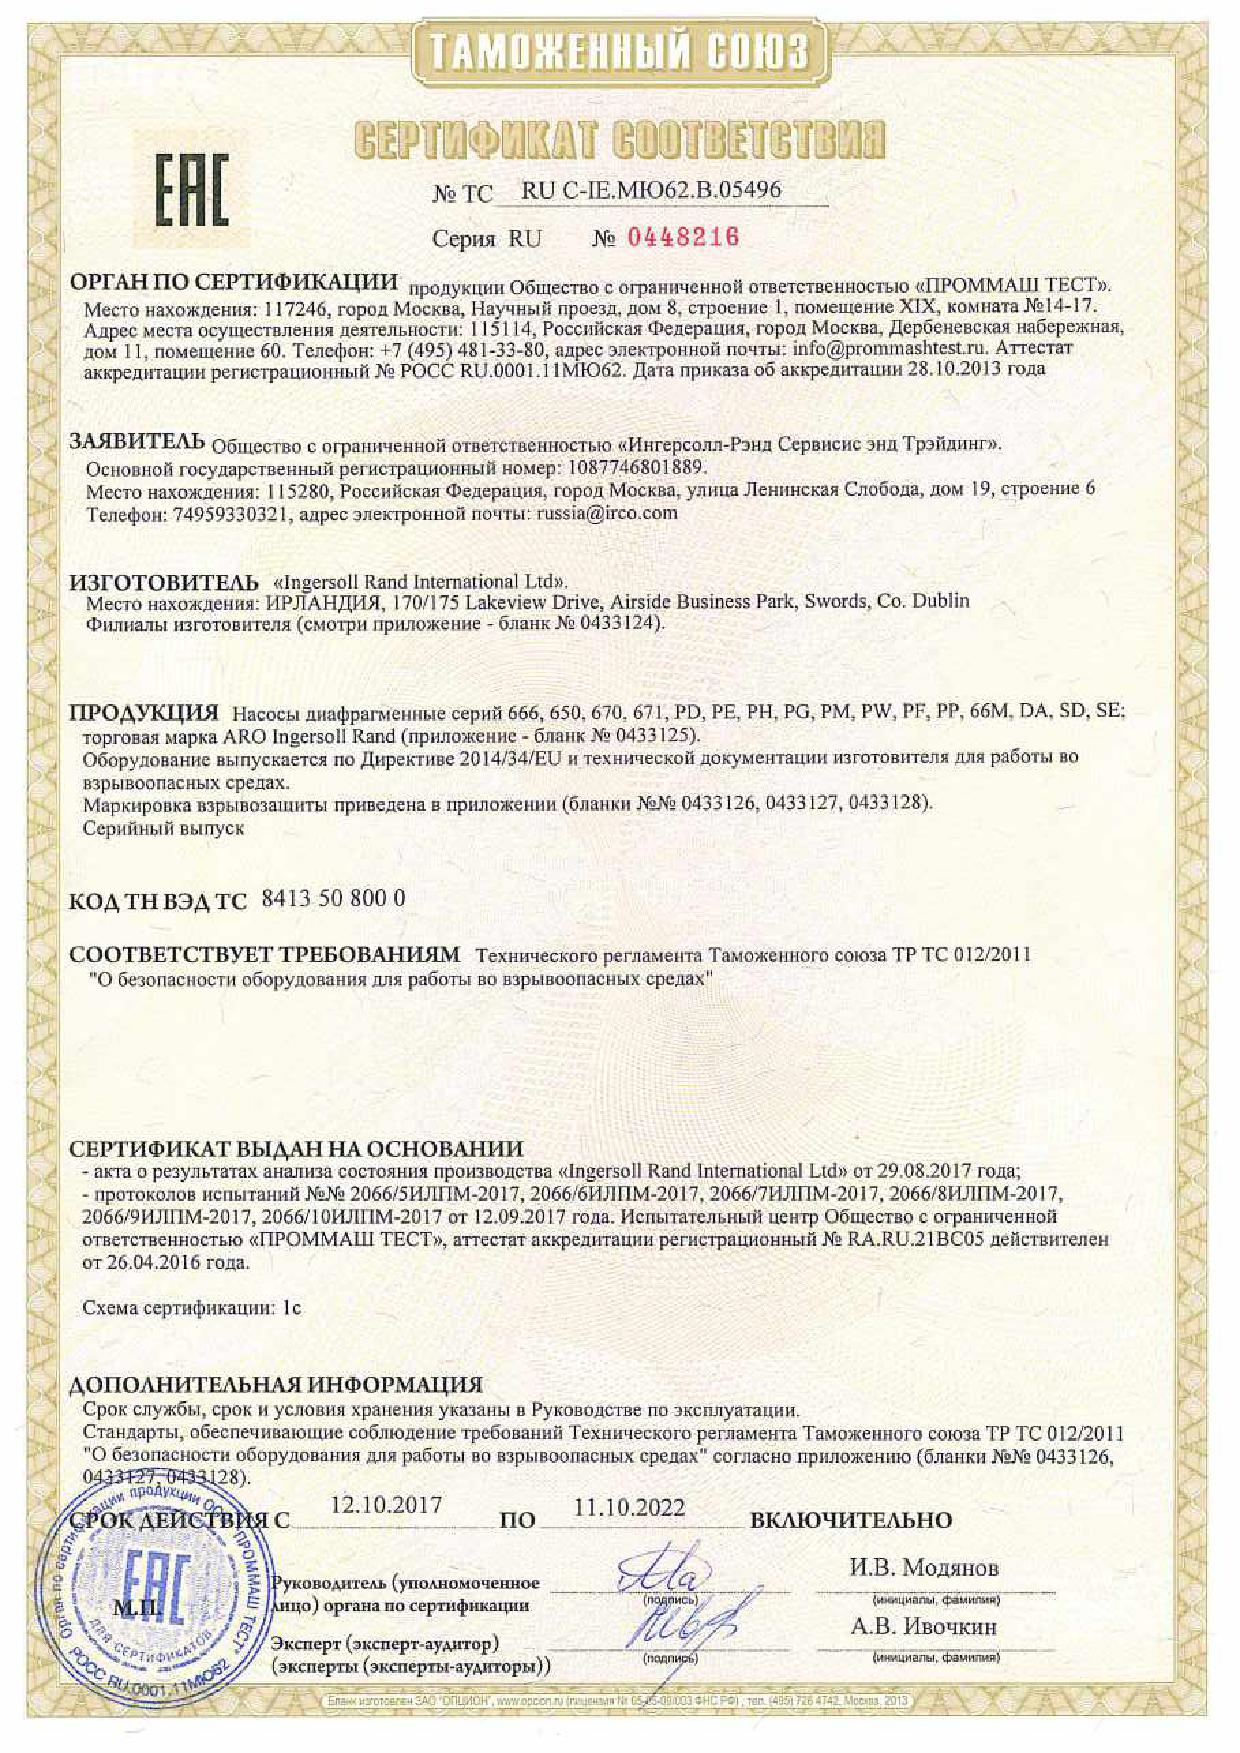 Сертификат соответствия ТР ТС 0122011